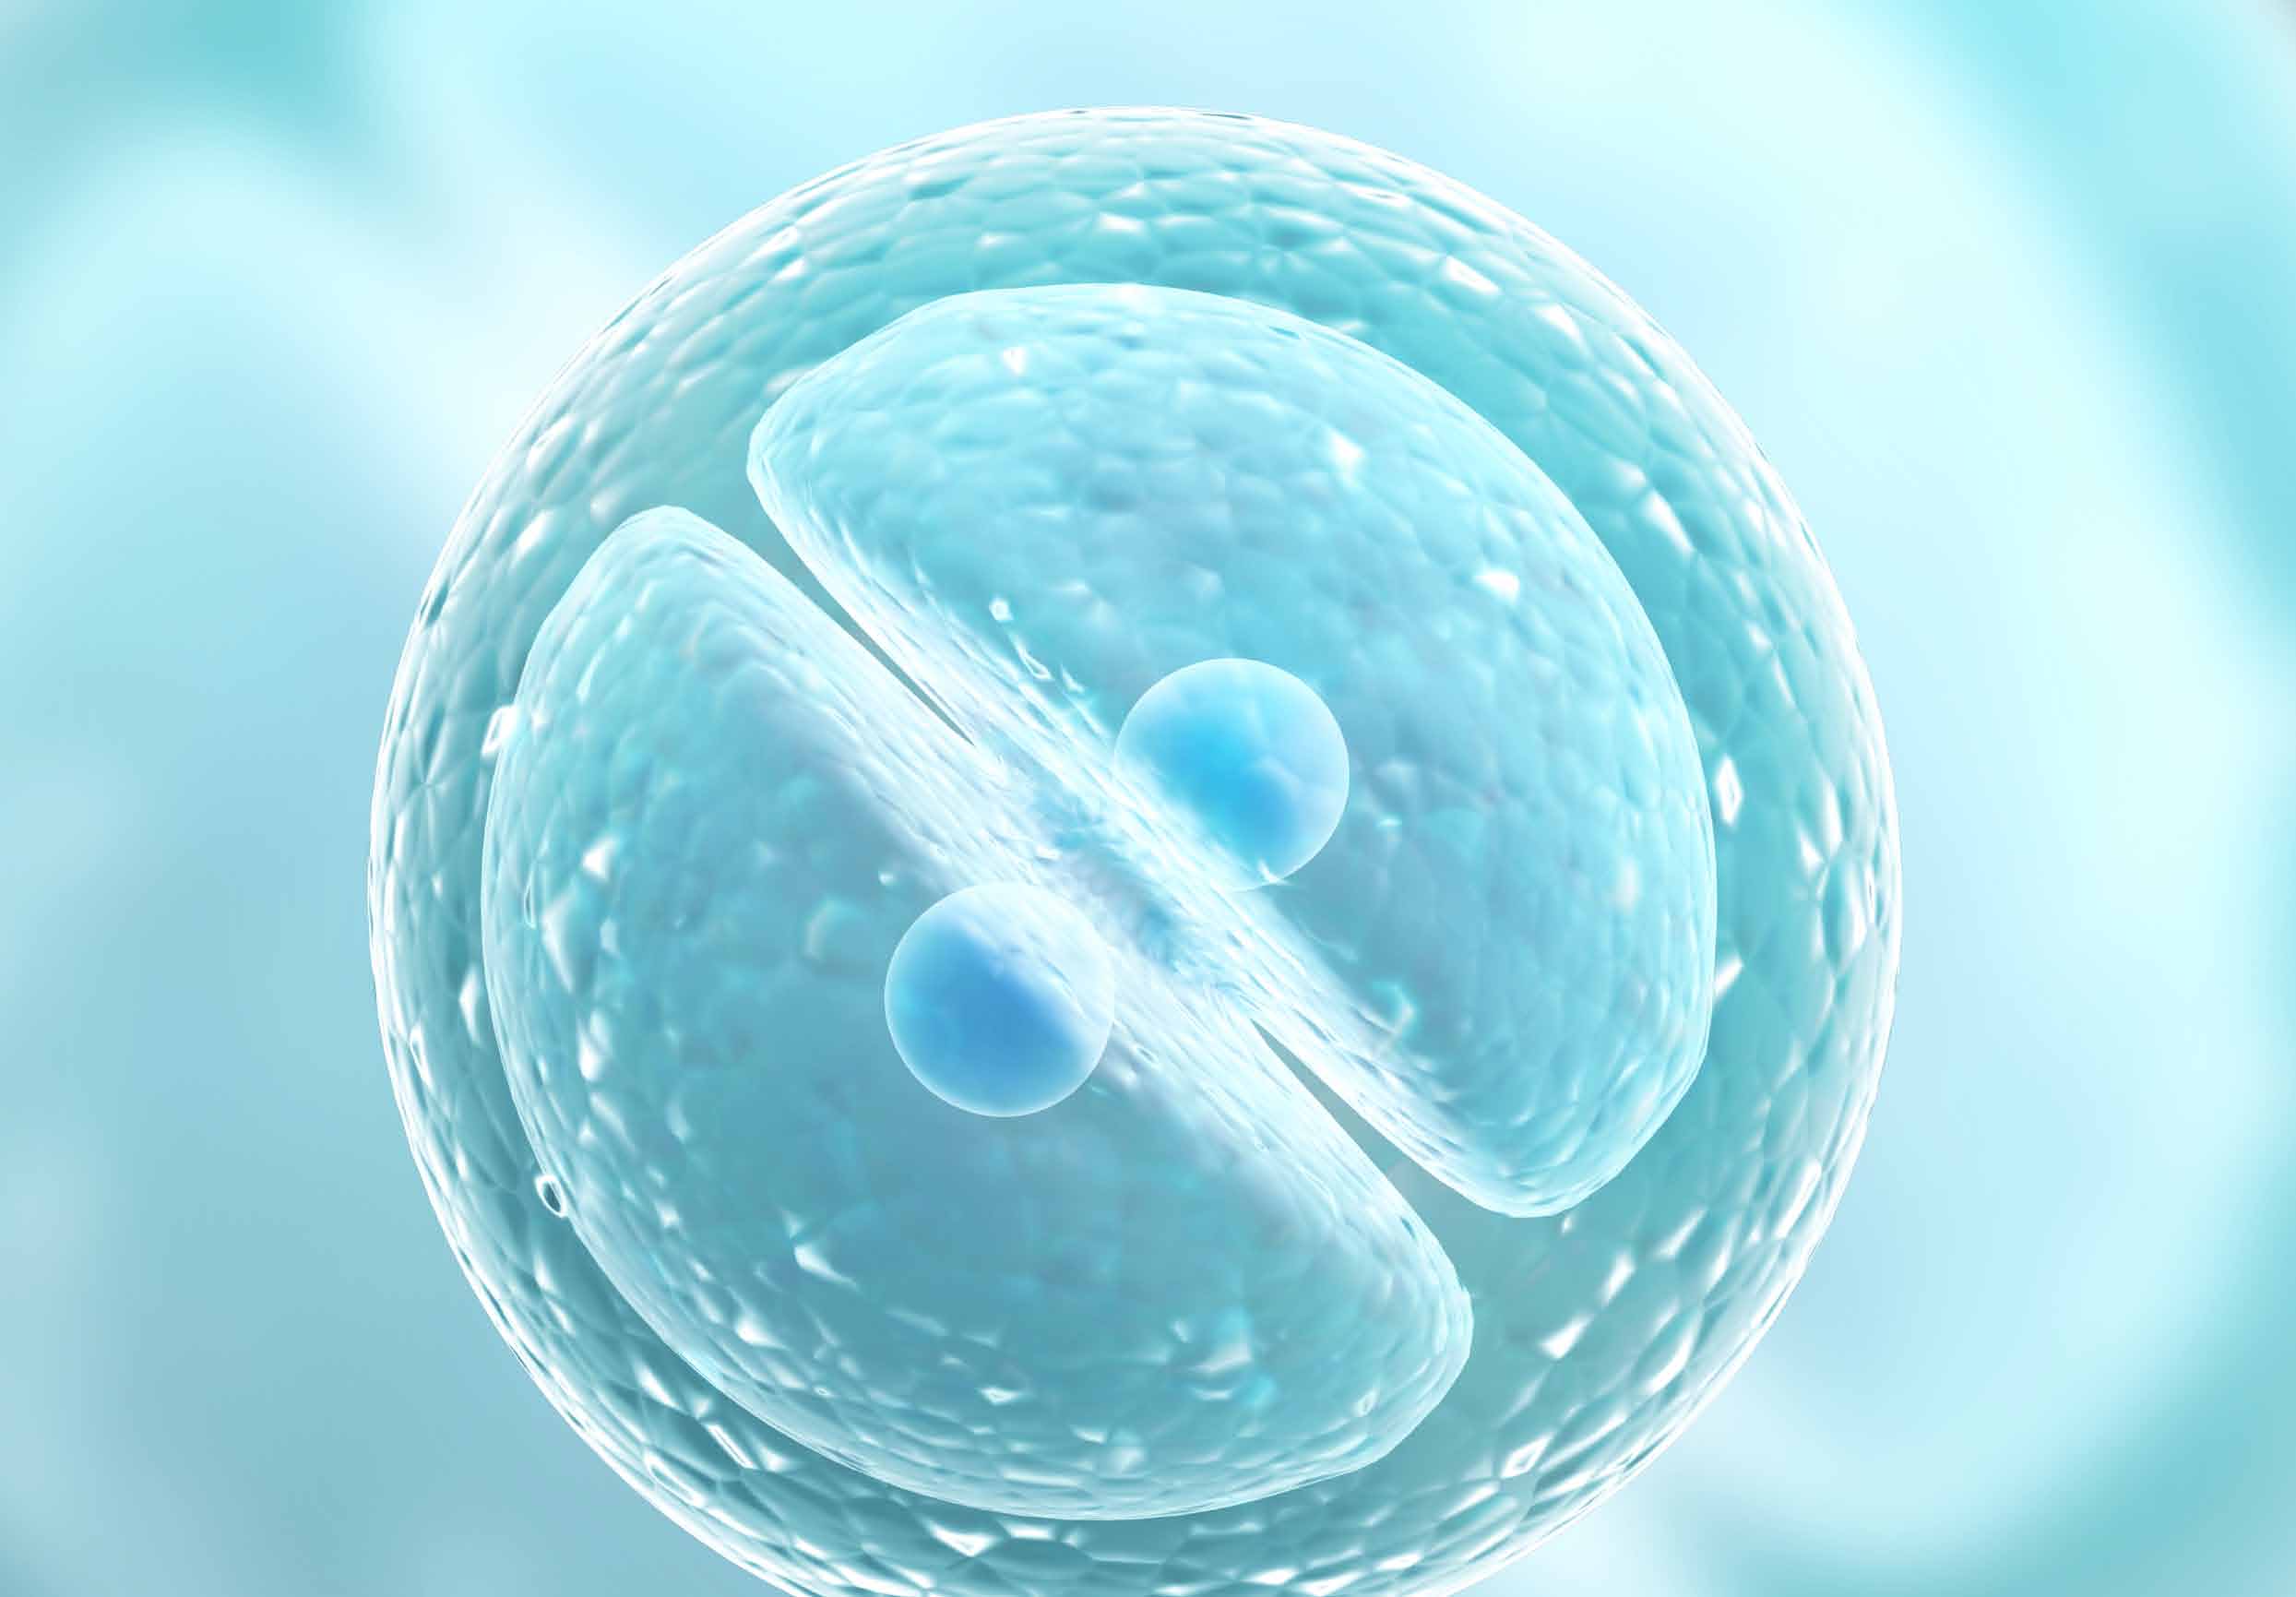 Tecnologias de reprodução assistida e a questão dos riscos para mulheres e embriões